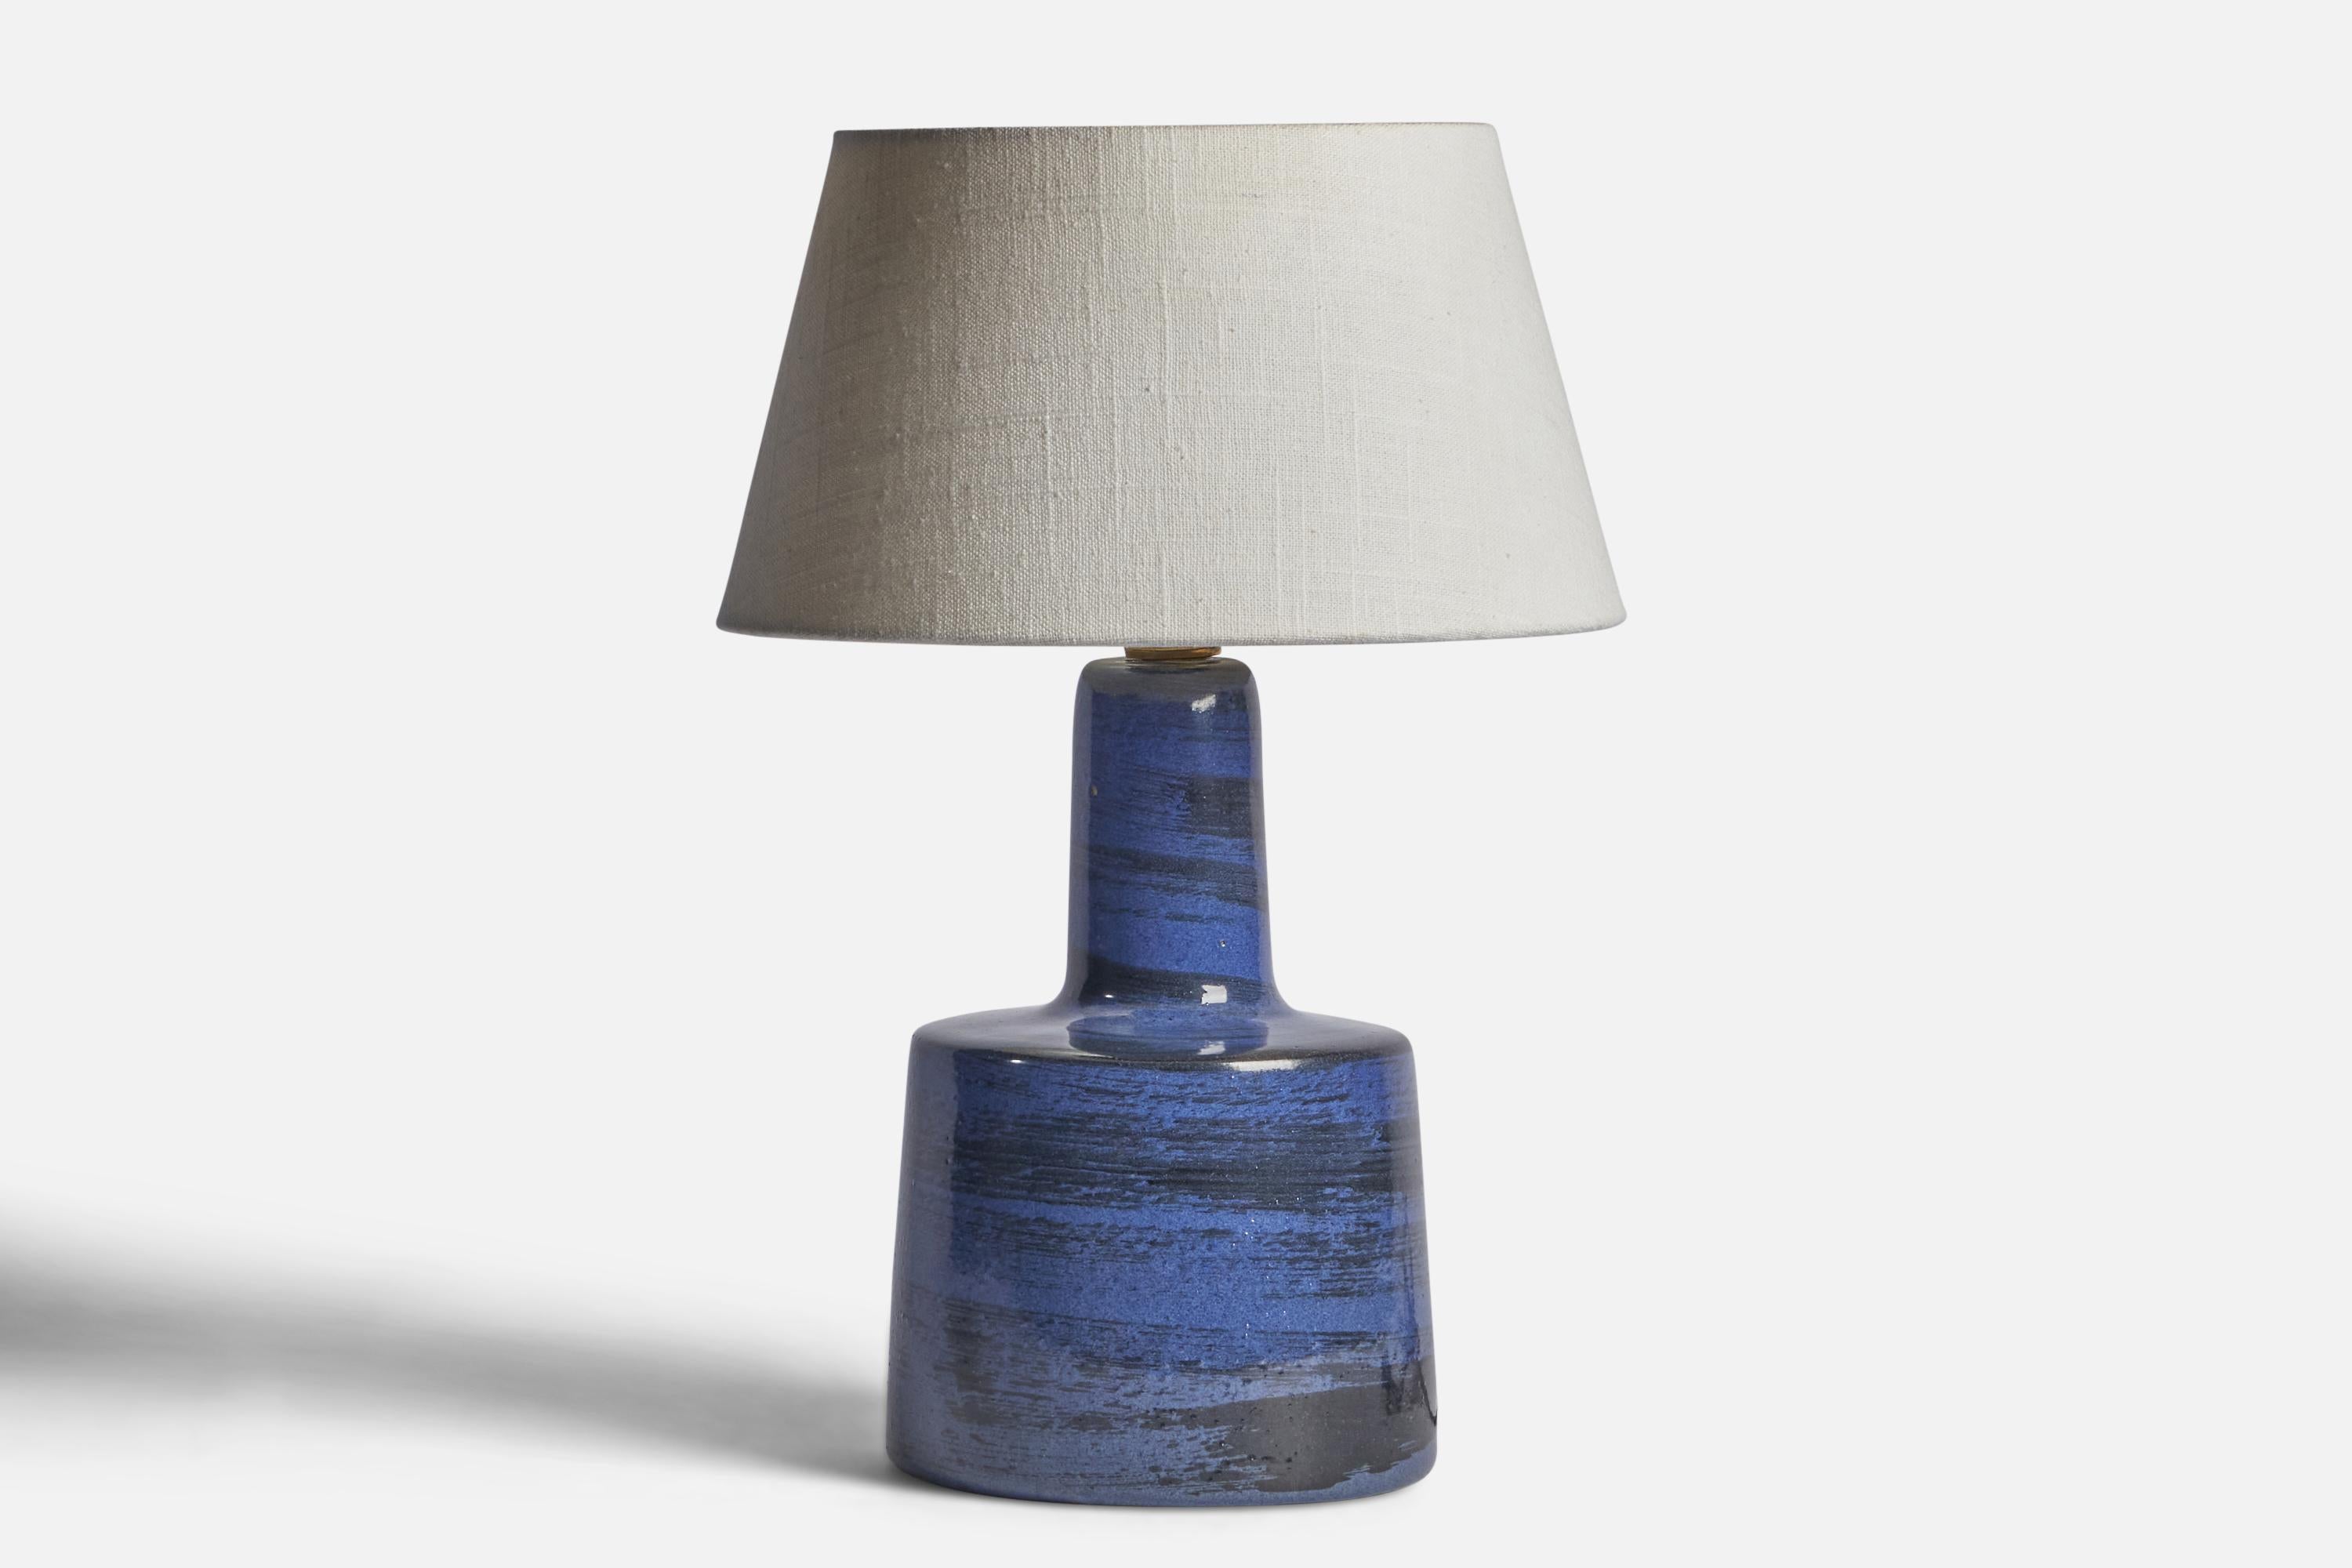 Lampe de table en céramique émaillée bleue conçue par Jane & Gordon Martz et produite par Marshall Studios, États-Unis, années 1960.

Dimensions de la lampe (pouces) : 12